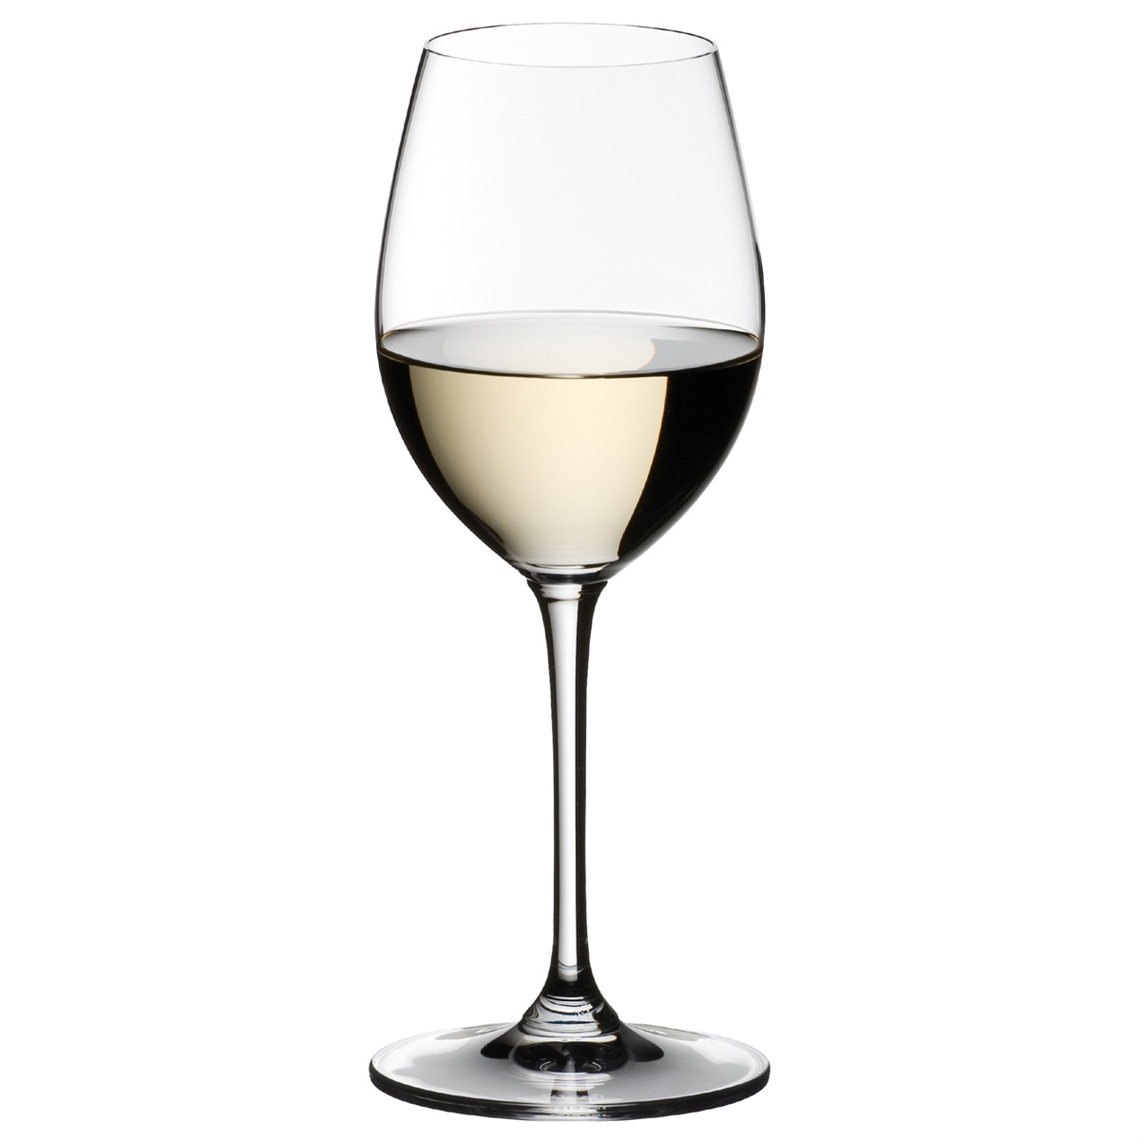 View more zalto from our Dessert Wine Glasses range